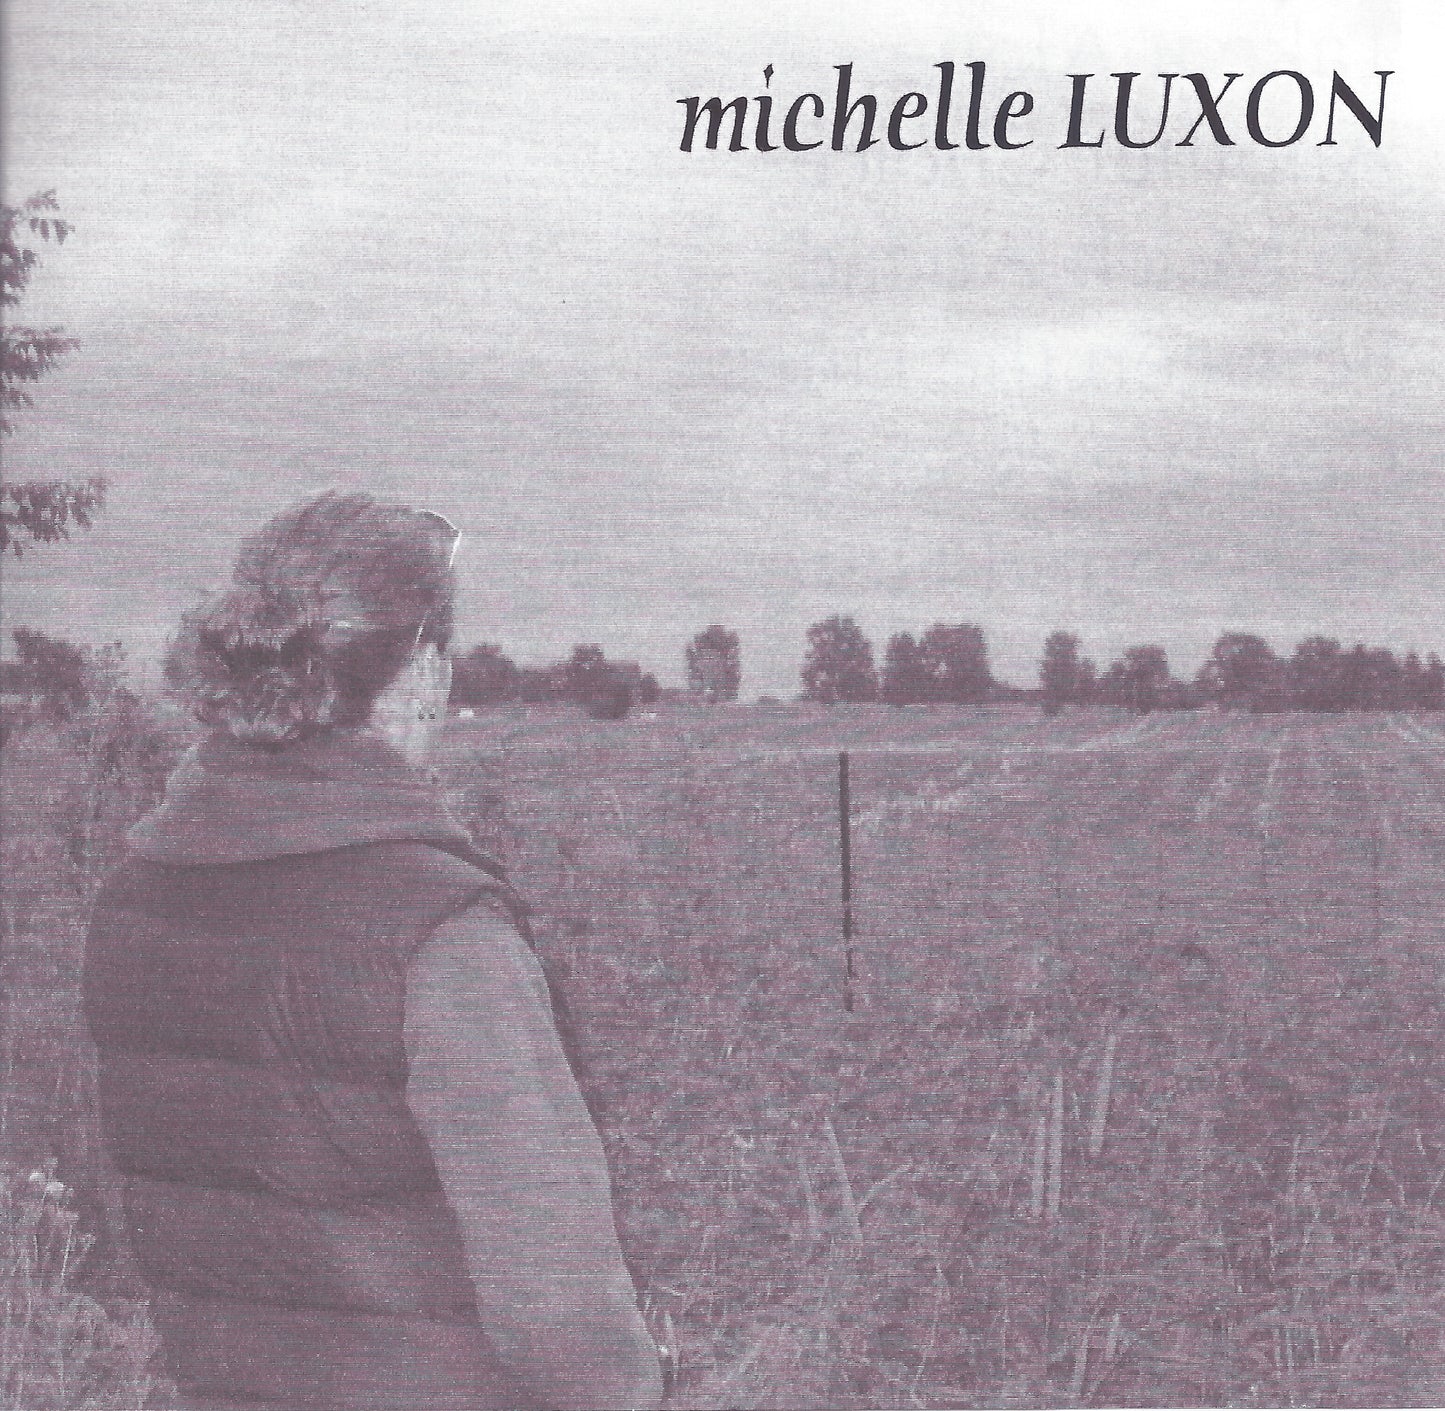 You - Michelle Luxon